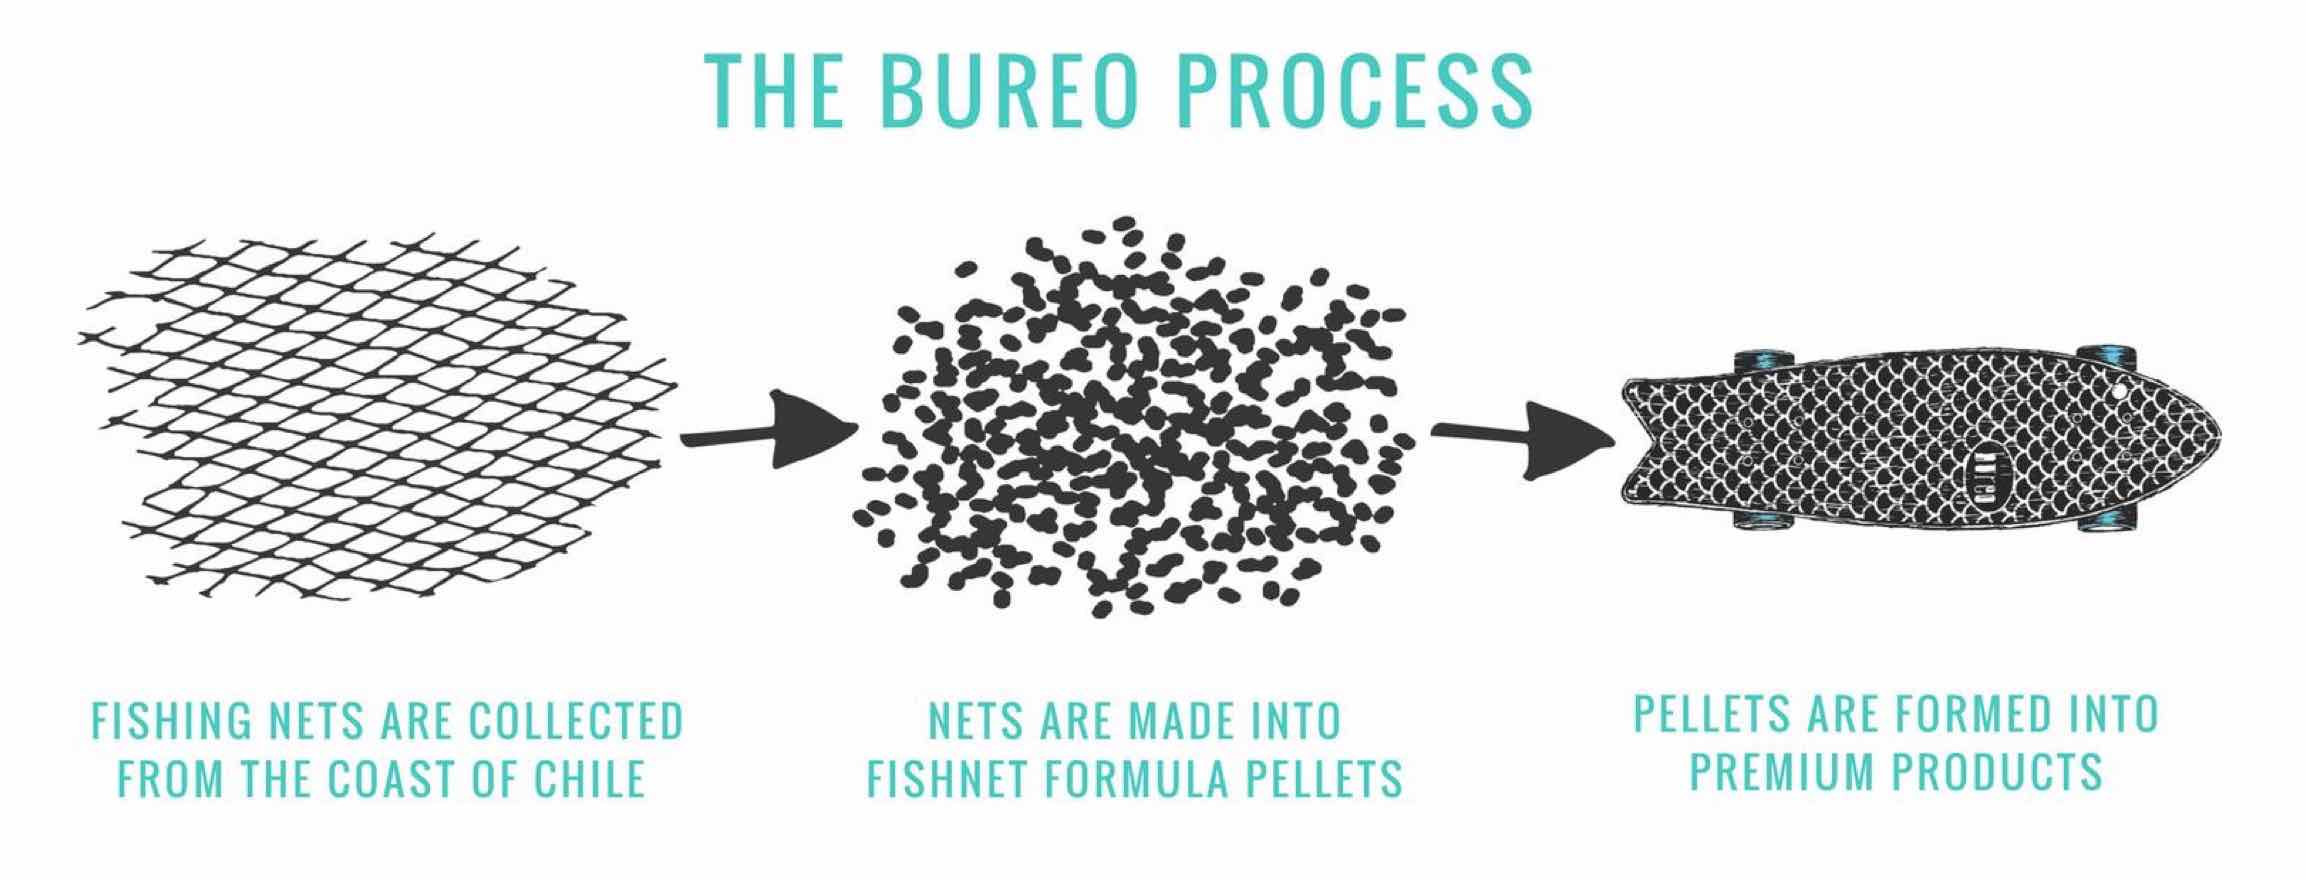 The burro process